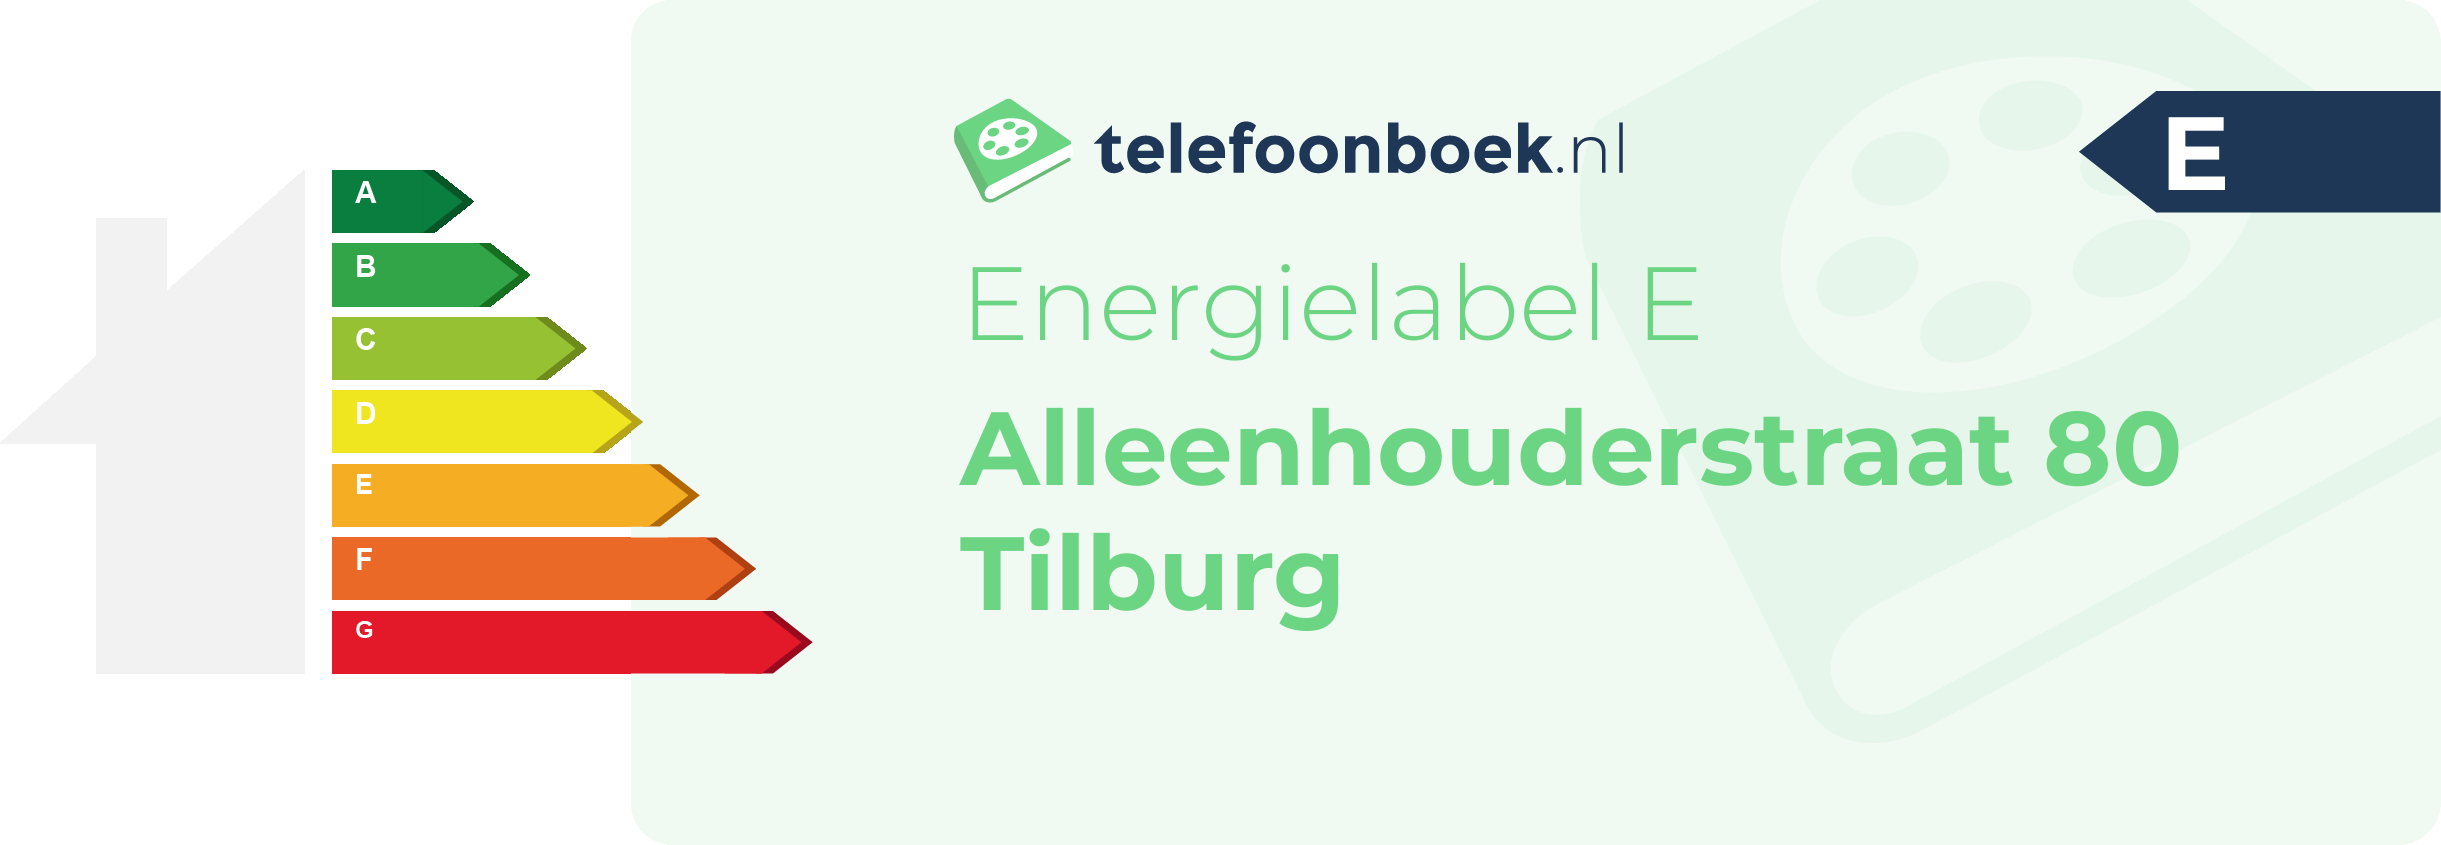 Energielabel Alleenhouderstraat 80 Tilburg